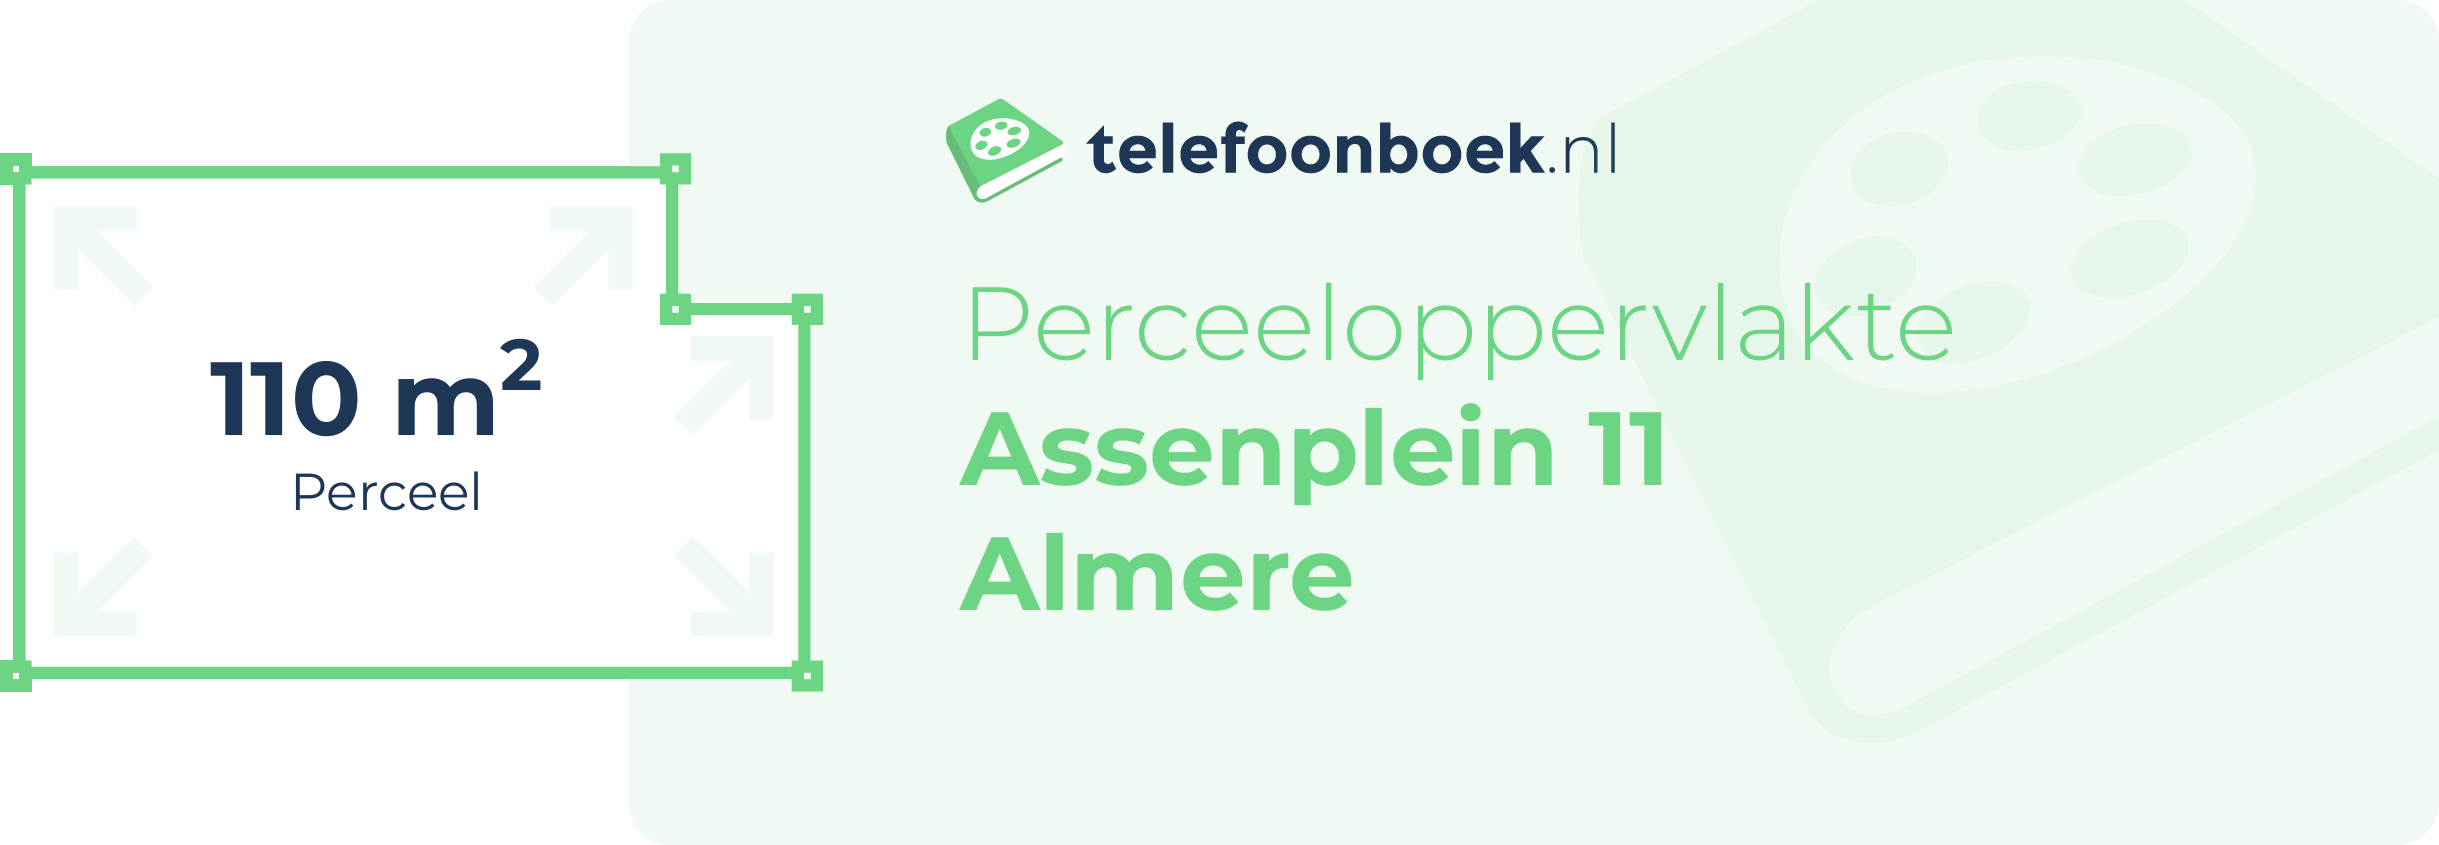 Perceeloppervlakte Assenplein 11 Almere